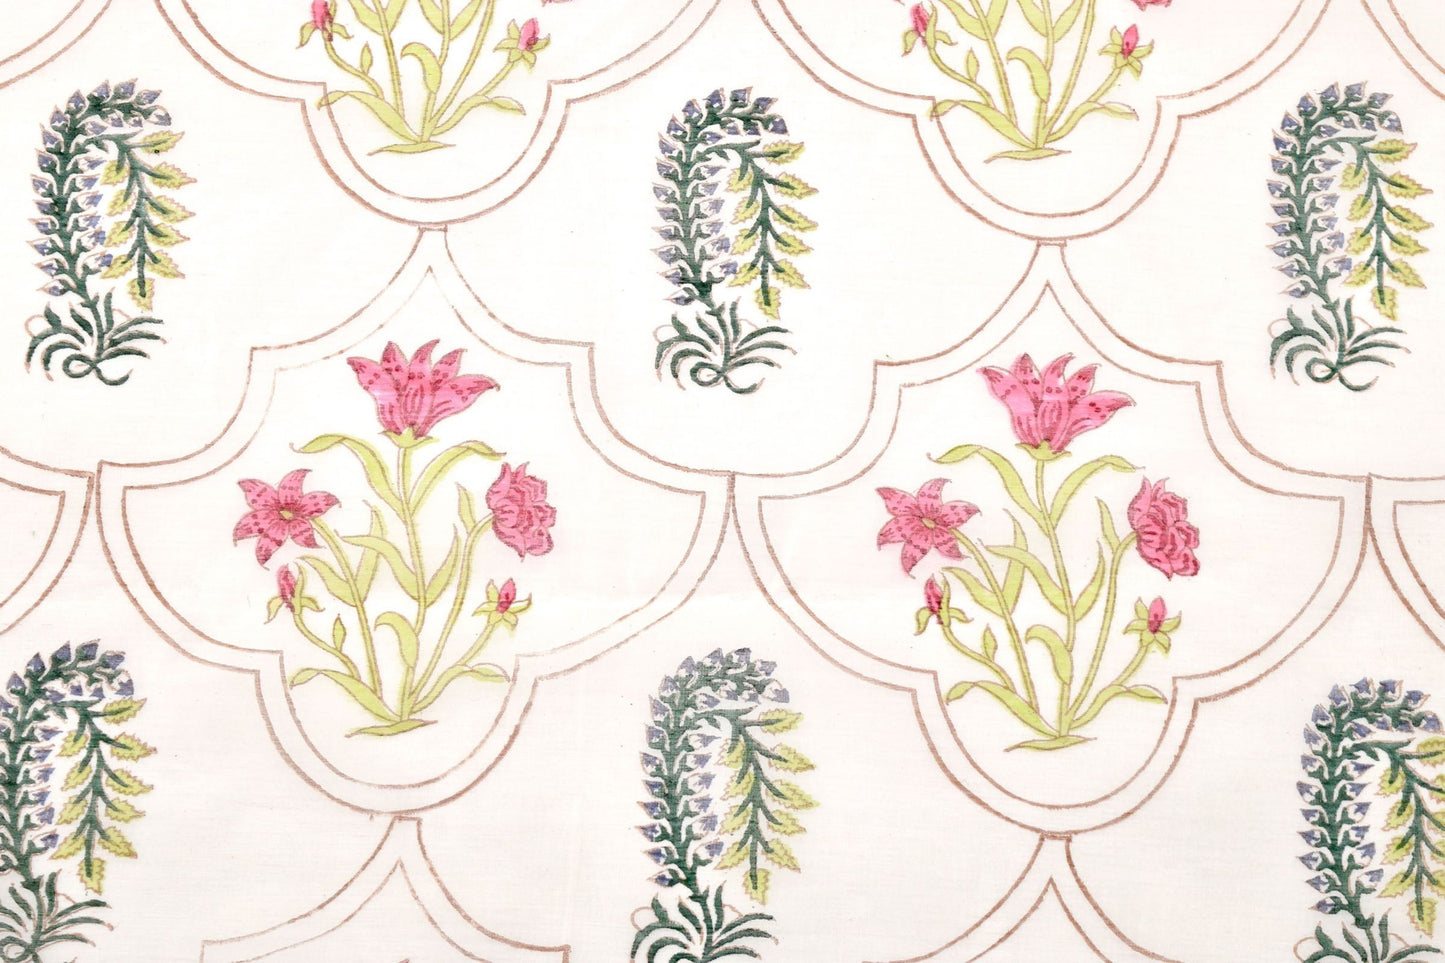 Bloc de chemin de table en coton imprimé de fleurs roses dans un motif en treillis TR3 